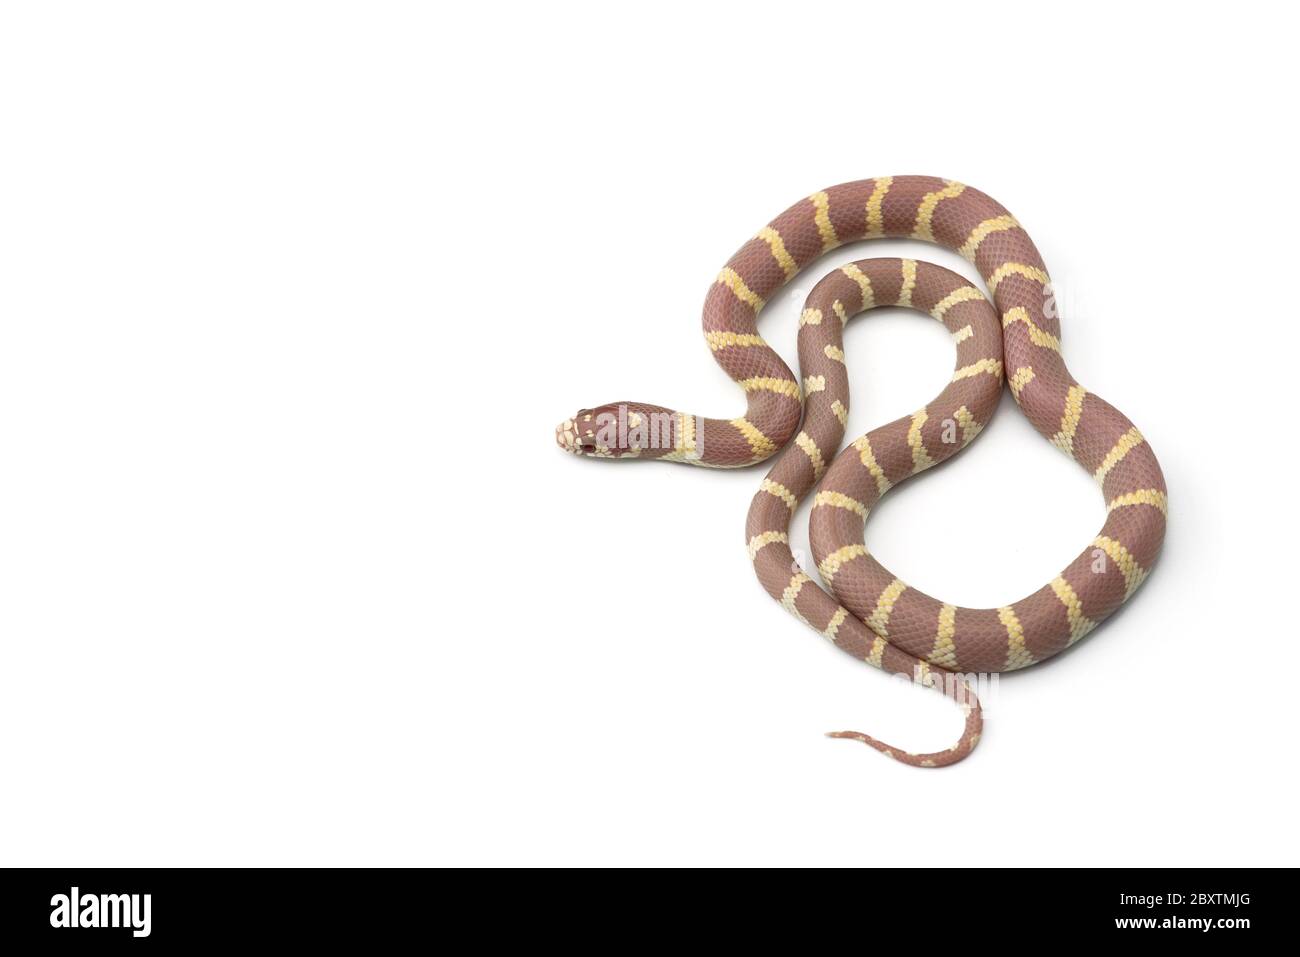 White-black King snake isolated on white background Stock Photo